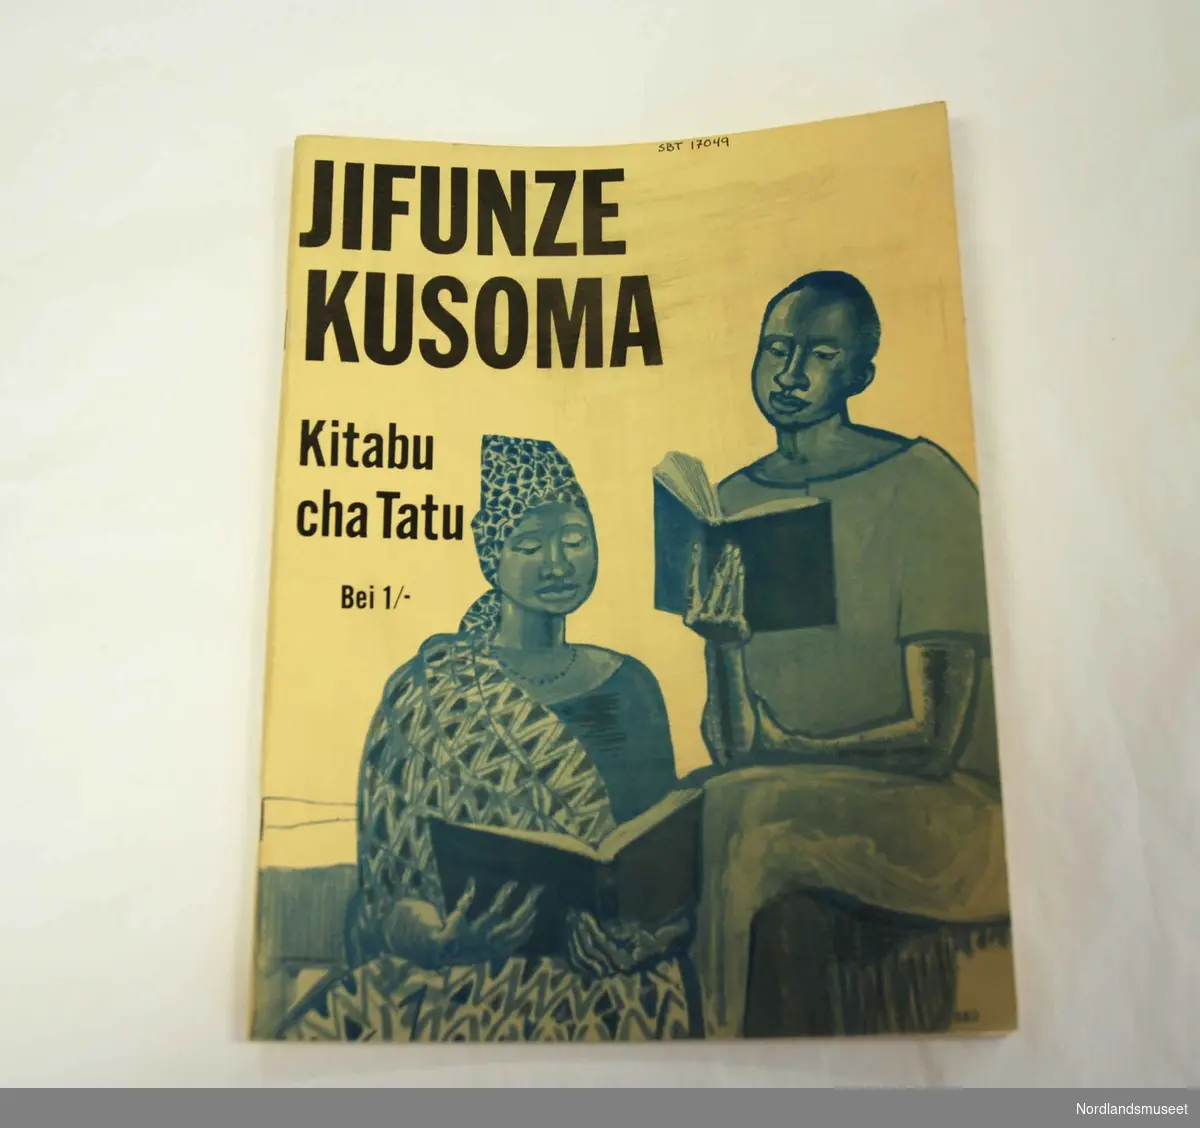 Lærebok i språk. (tanzania)
Boktittel:
Jifuze Kusoma 
Kitabu cha Tatu
Bei 1/-